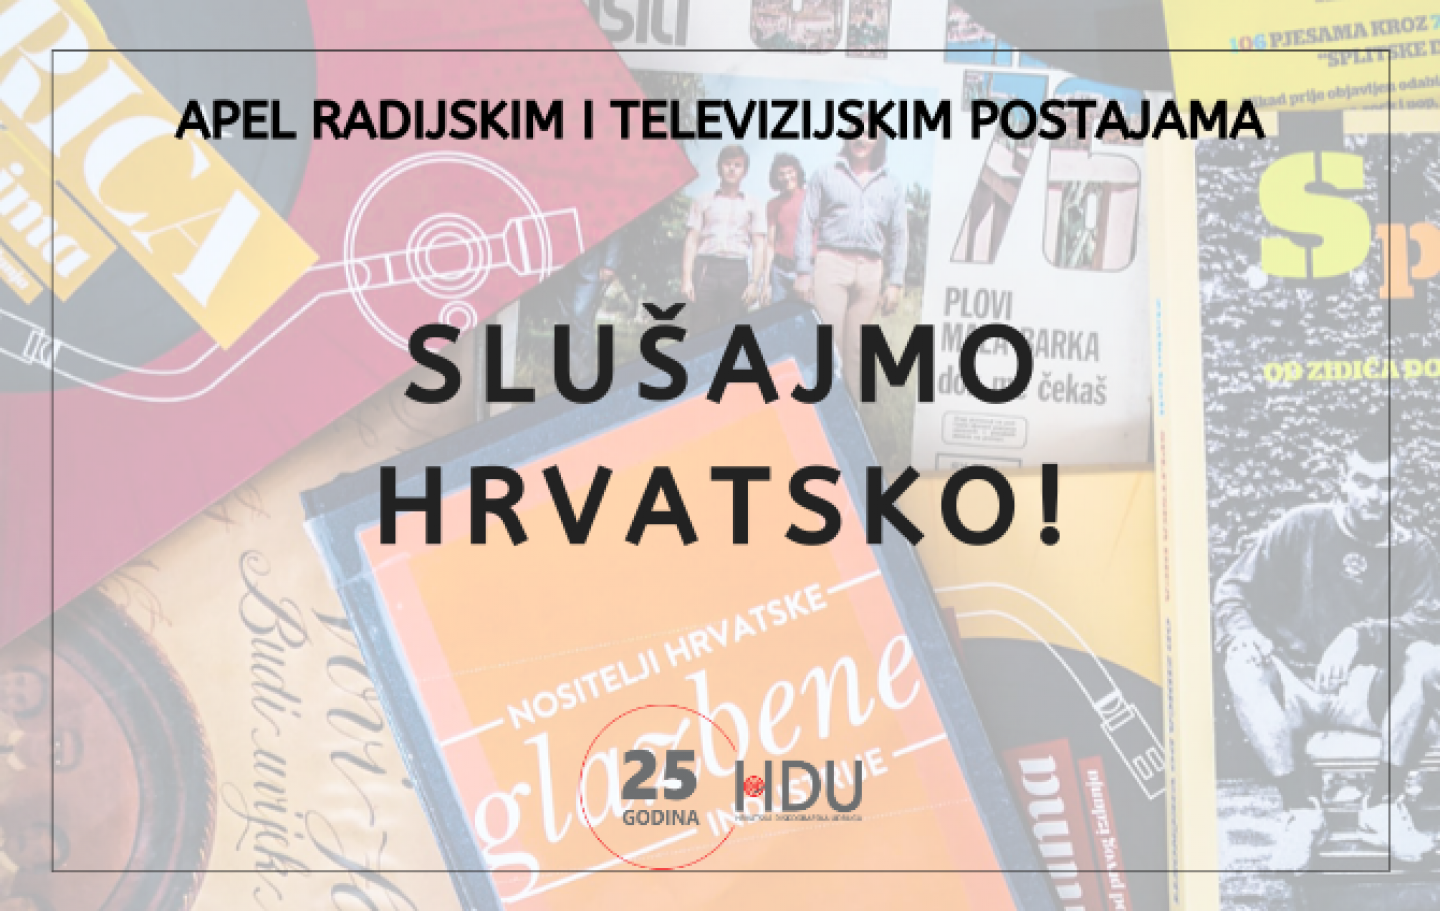 Hrvatski diskografi pozivaju: Povećajte emitiranje domaće glazbe različitih žanrova!